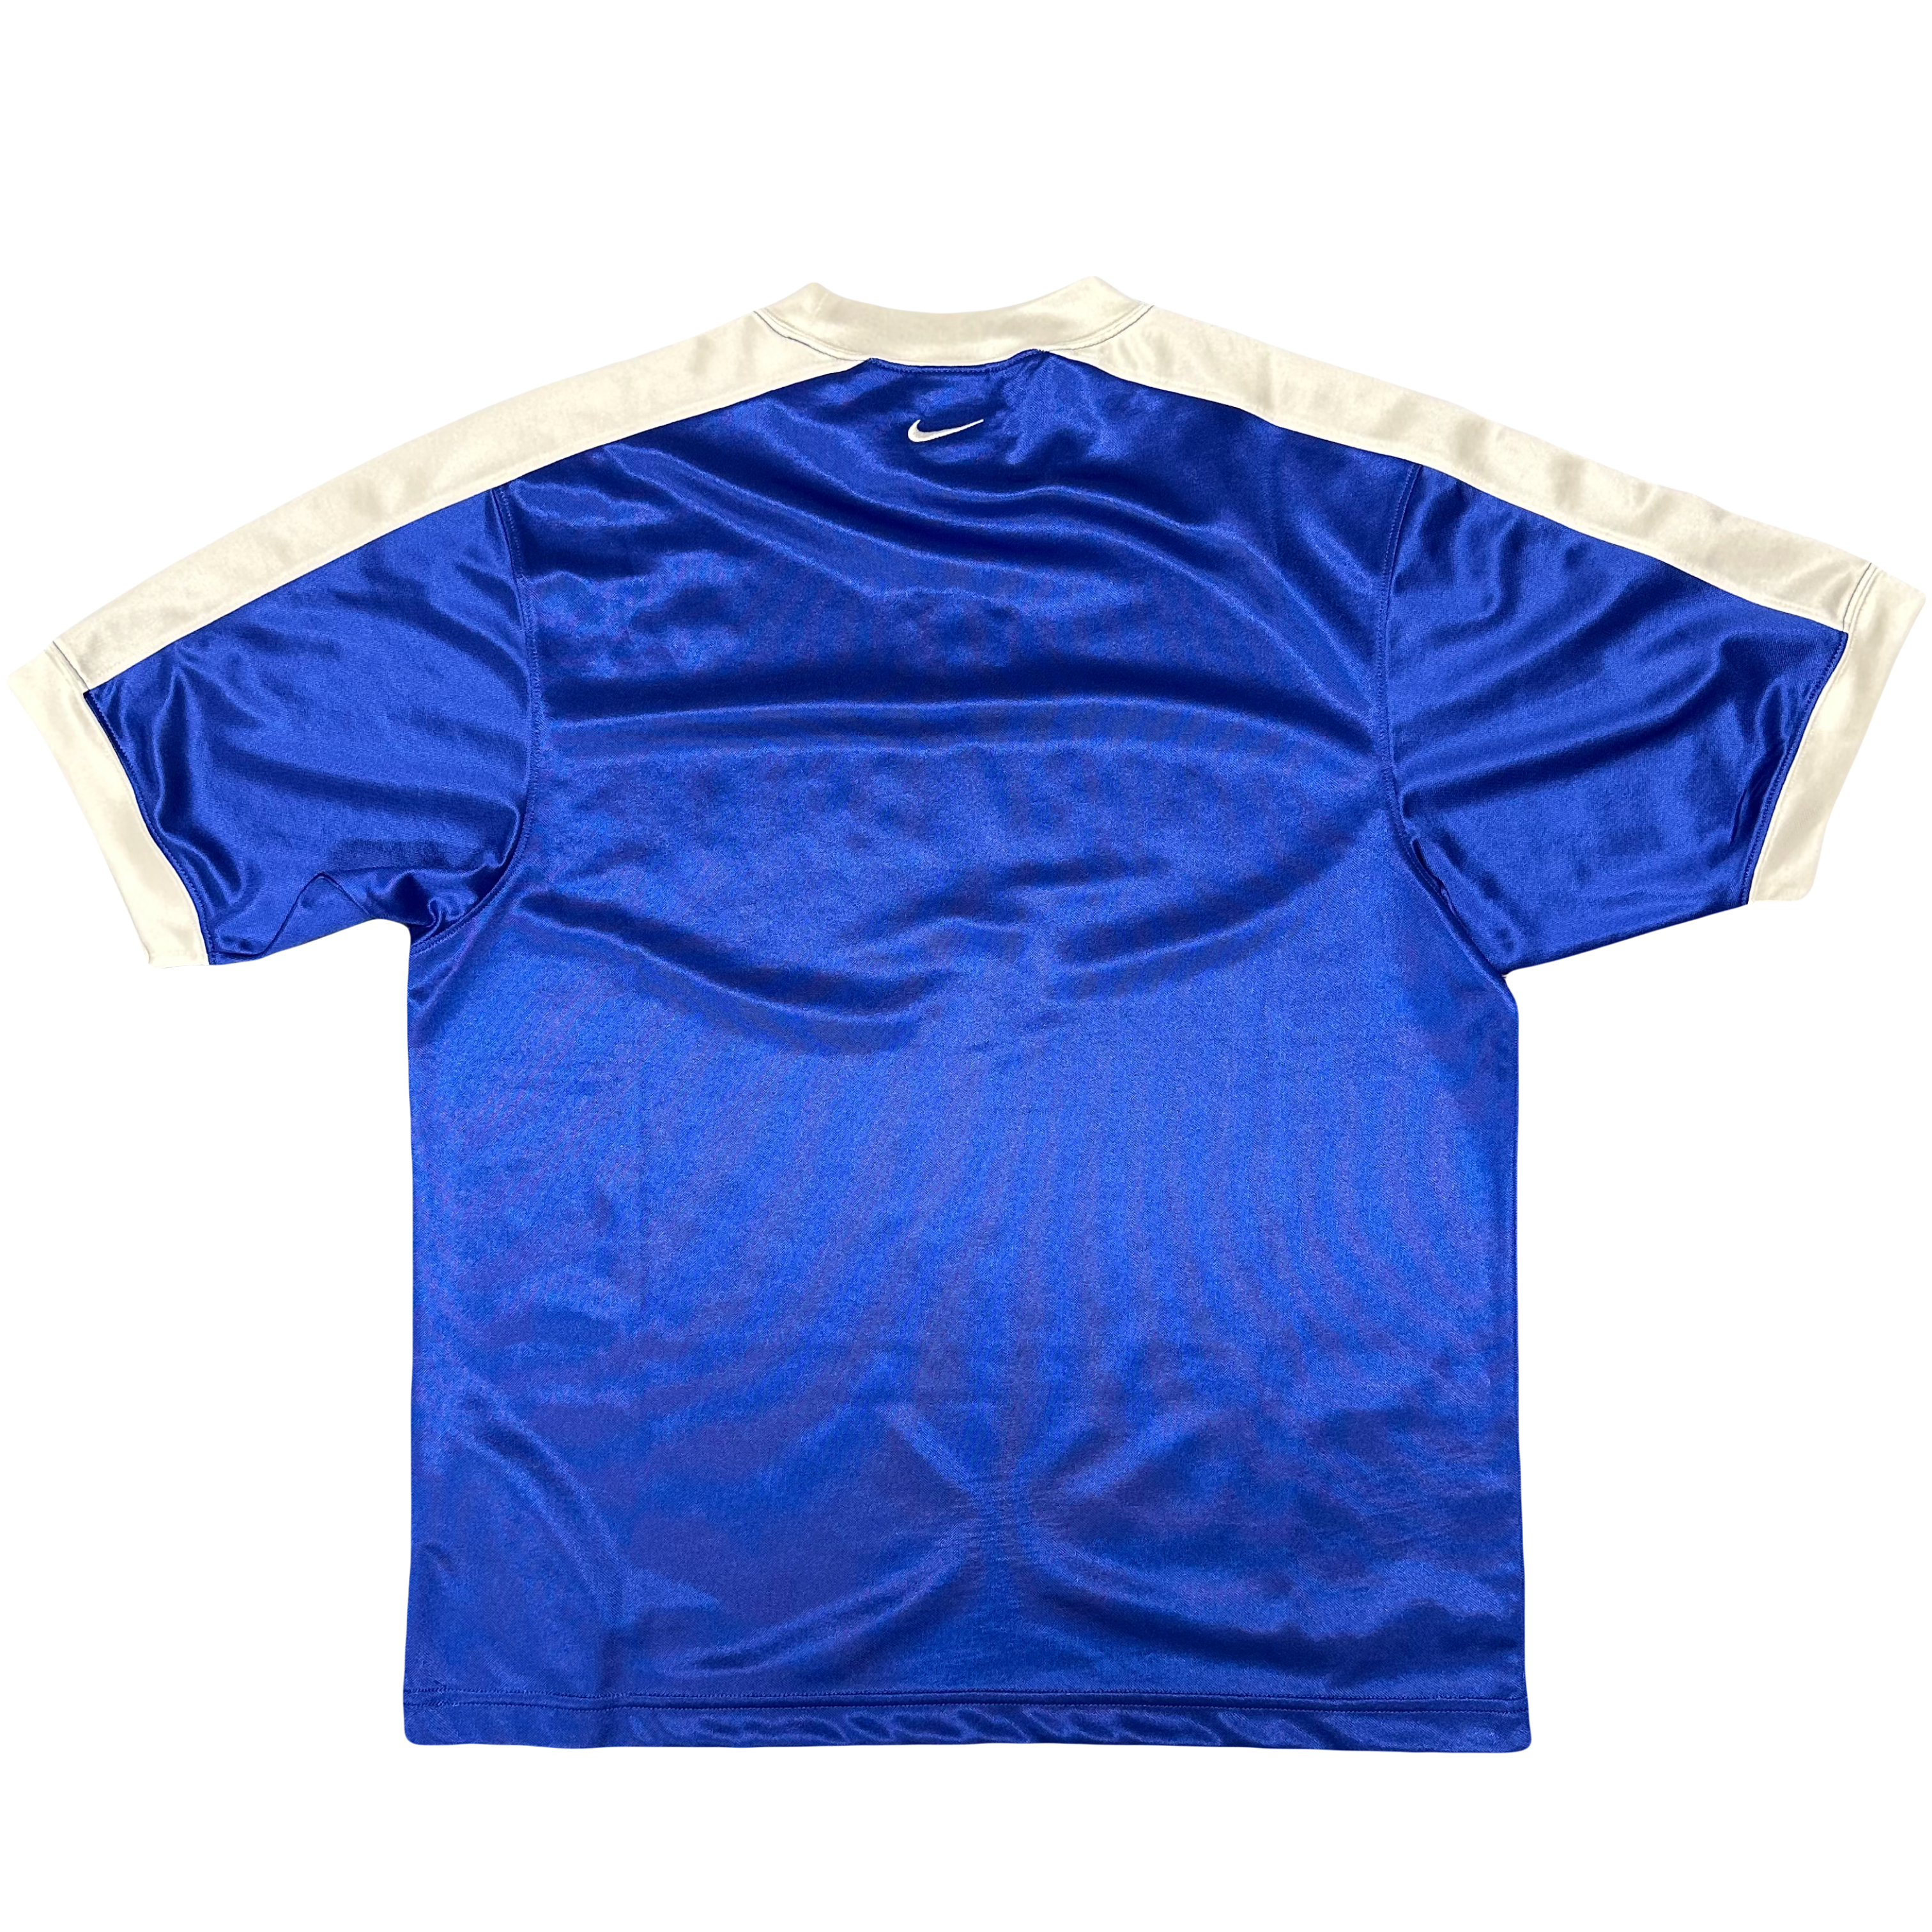 Nike Brazil 2002 Training Shirt In Blue ( S )